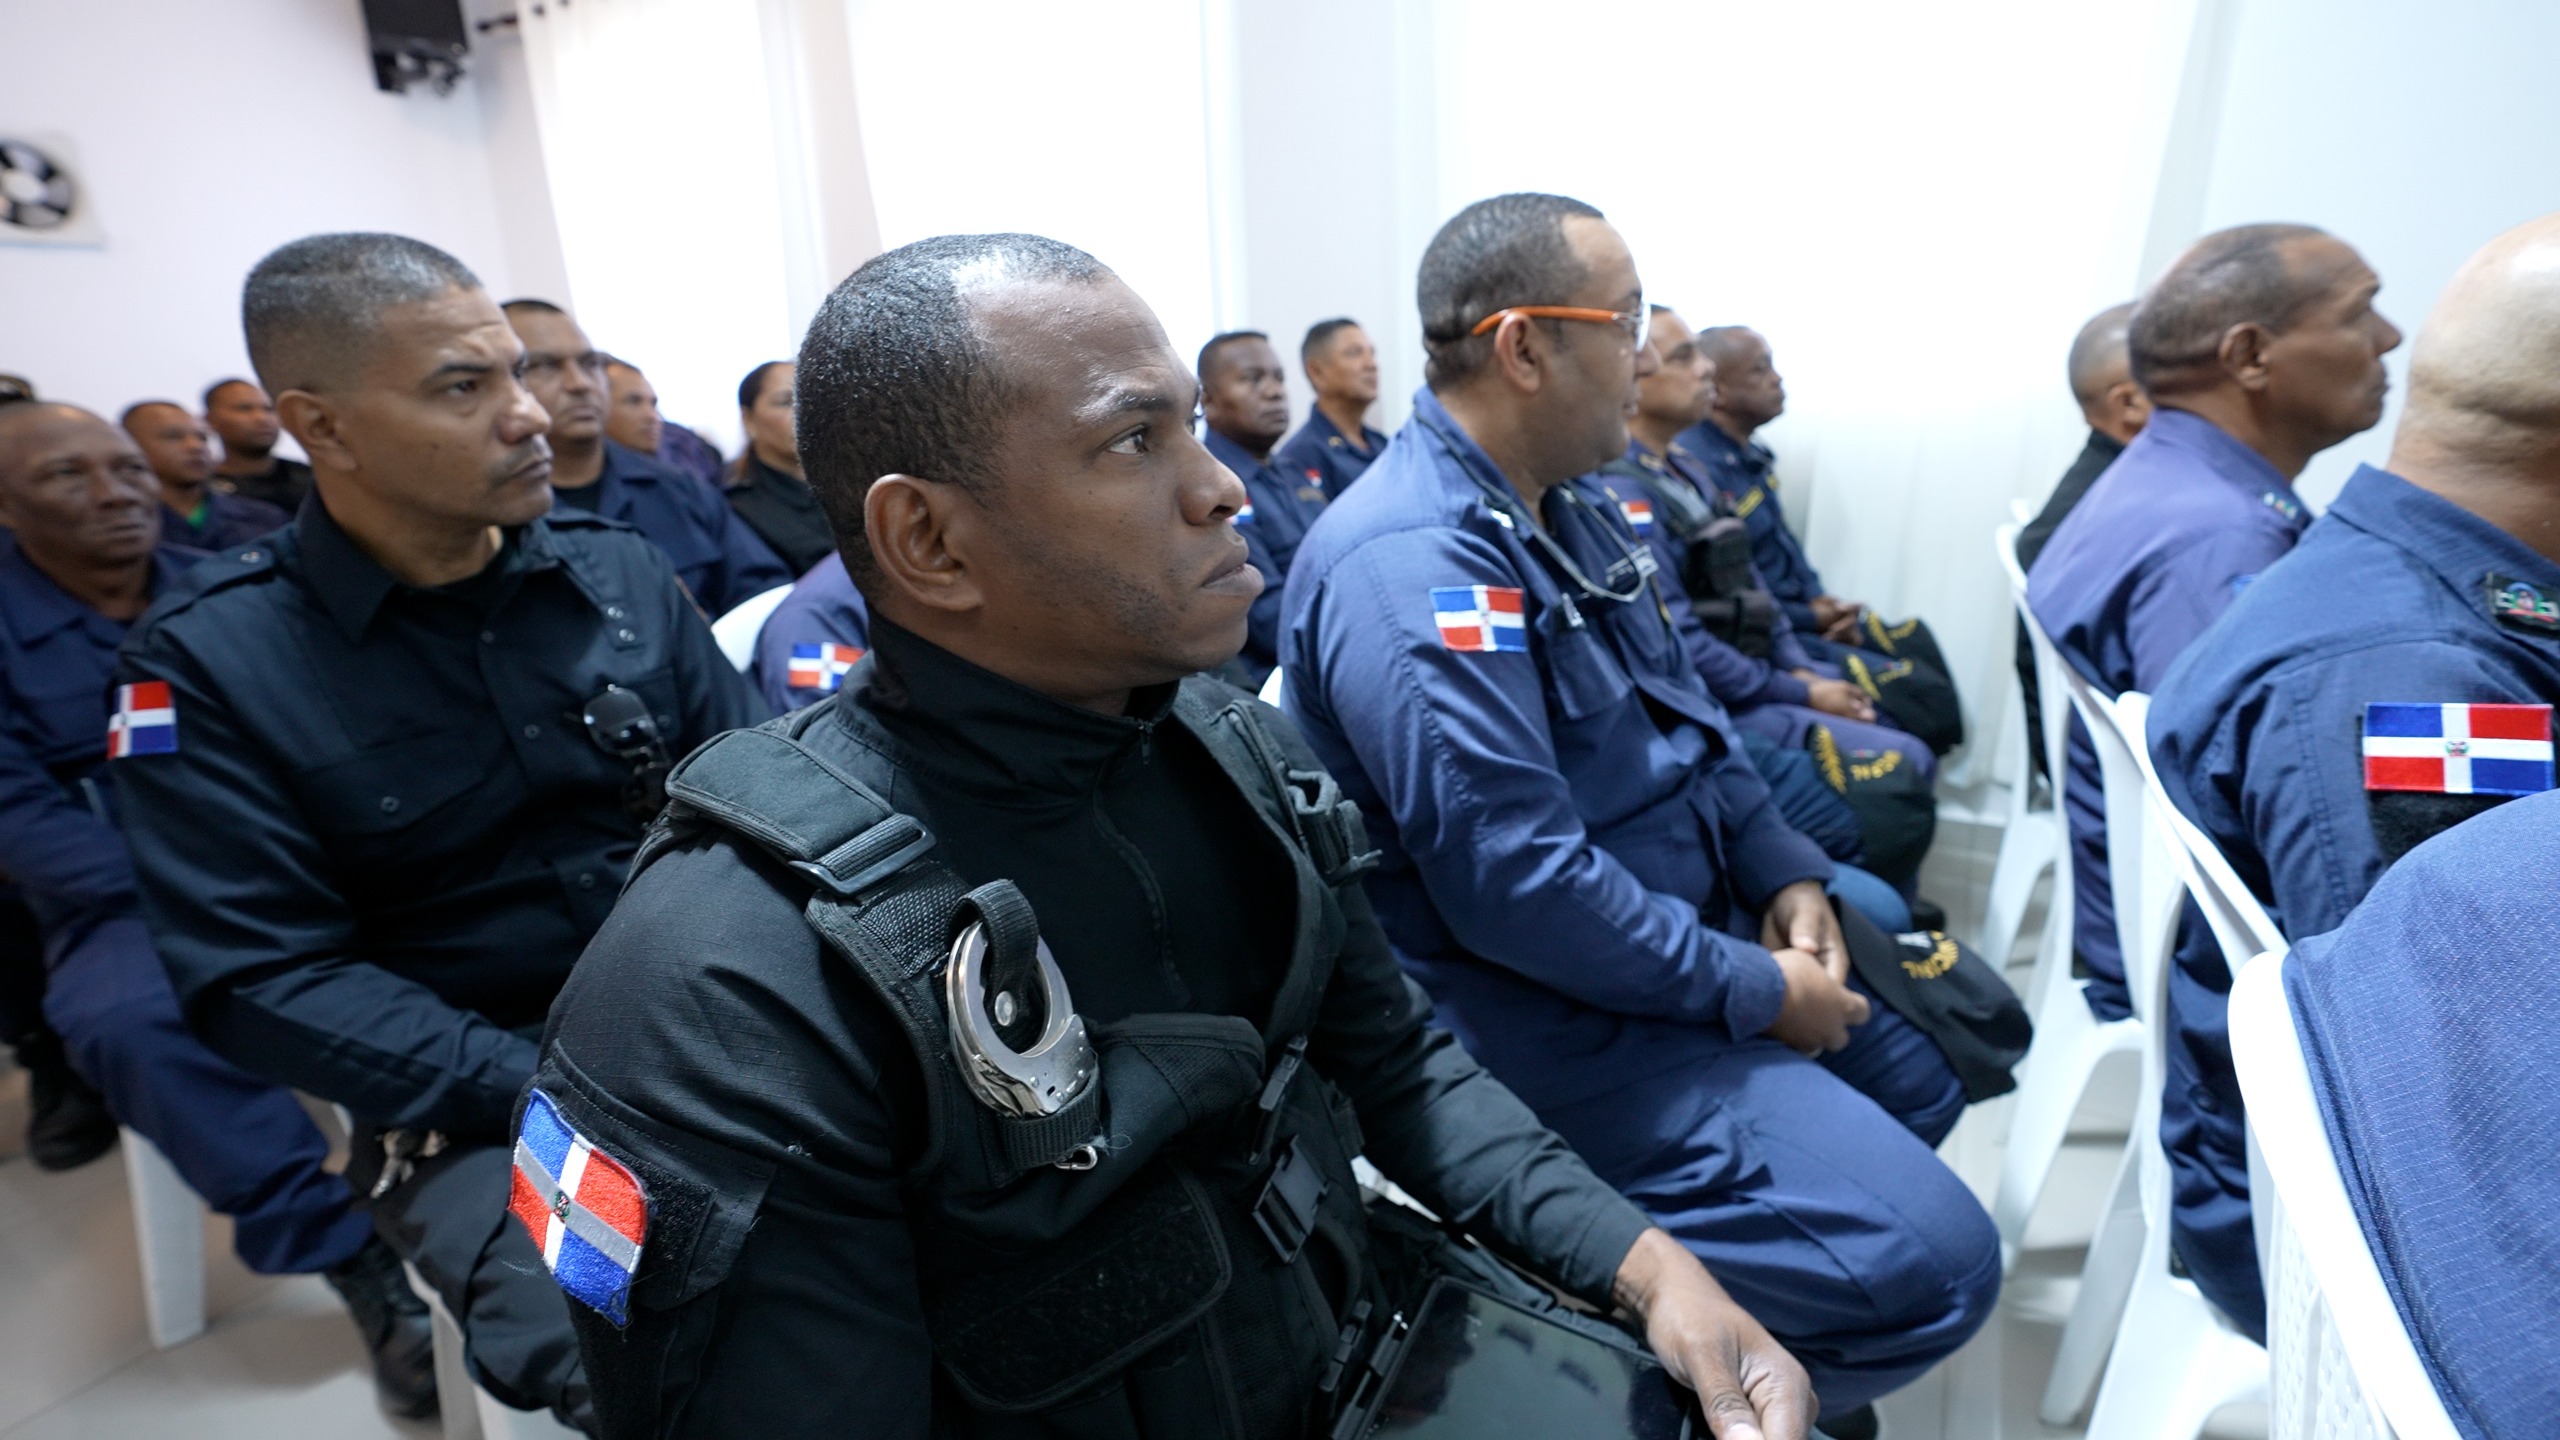 REPÚBLICA DOMINICANA: Ministerio de Interior y Policía fortalece Policía Municipal con jornada educativa de tres meses; inicia en Monseñor Nouel y Puerto Plata